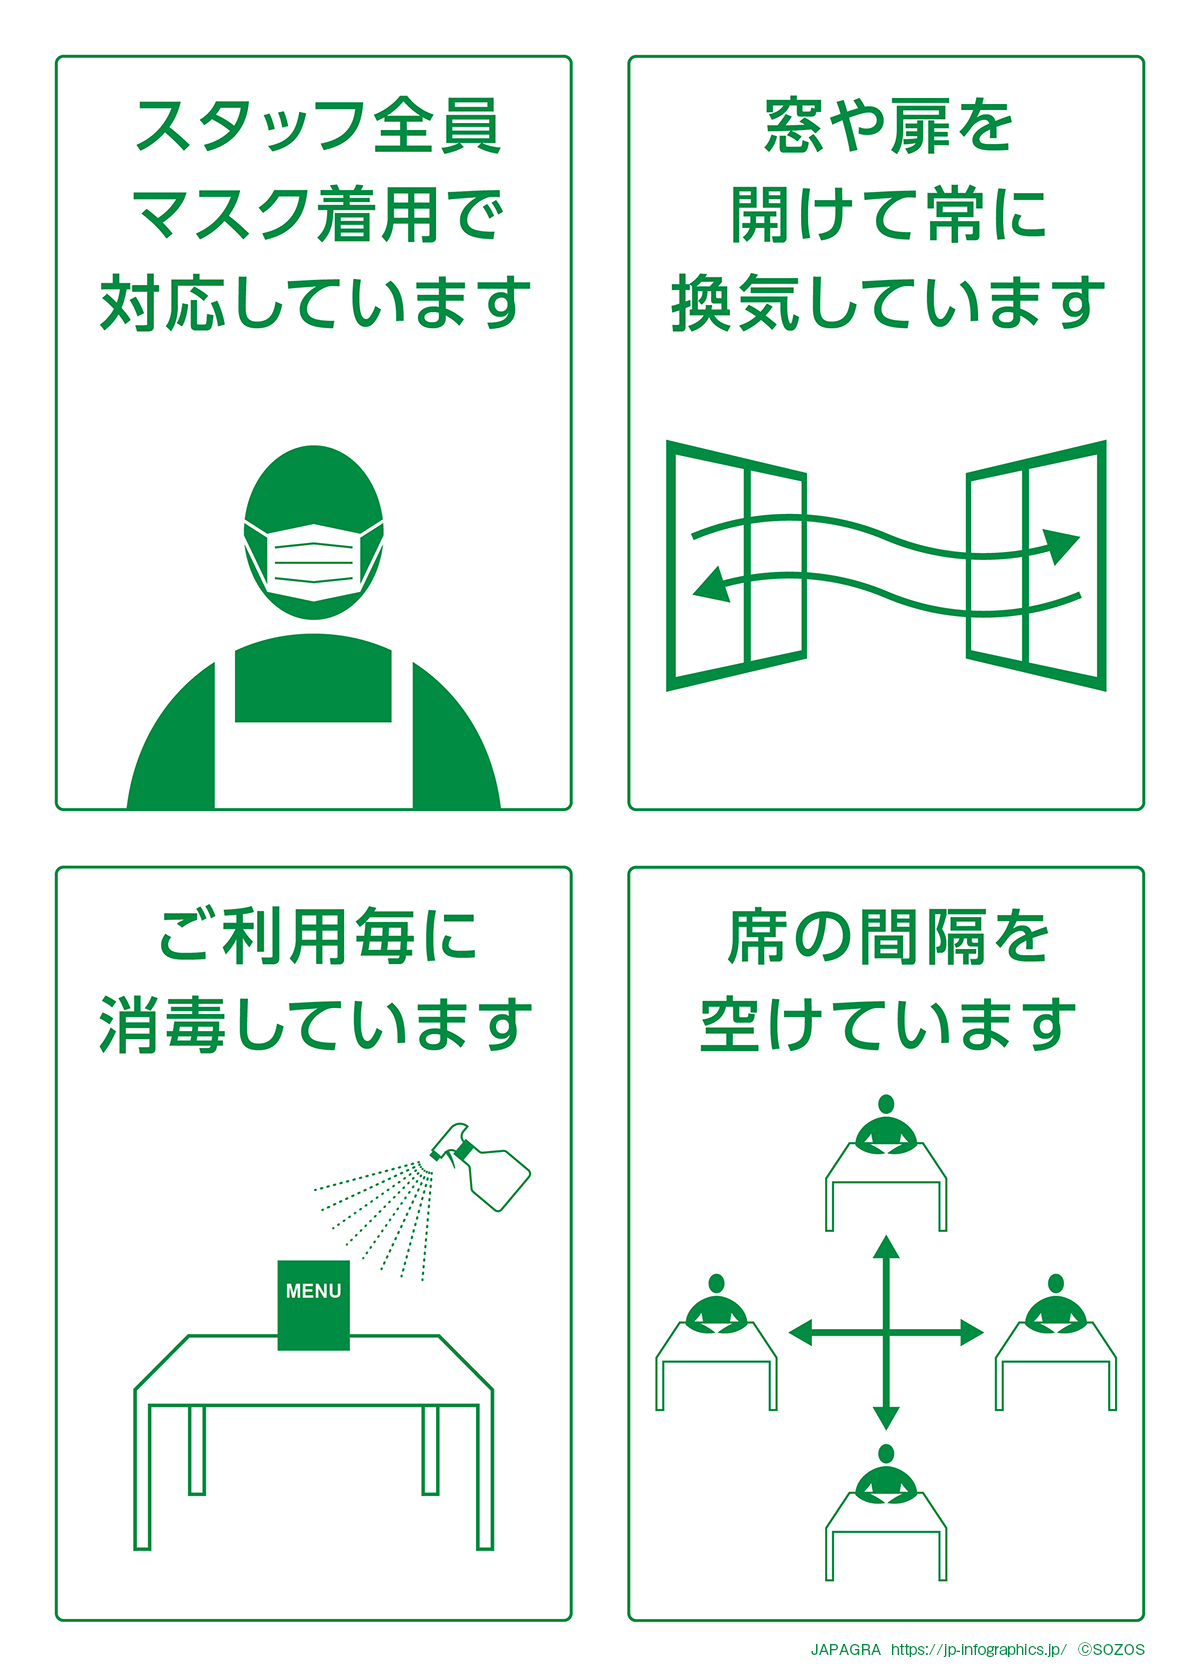 無料ダウンロード 新型コロナウイルス対策ポスター 飲食店様向け インフォグラフィックで日本がわかる Japagra ジャパグラ